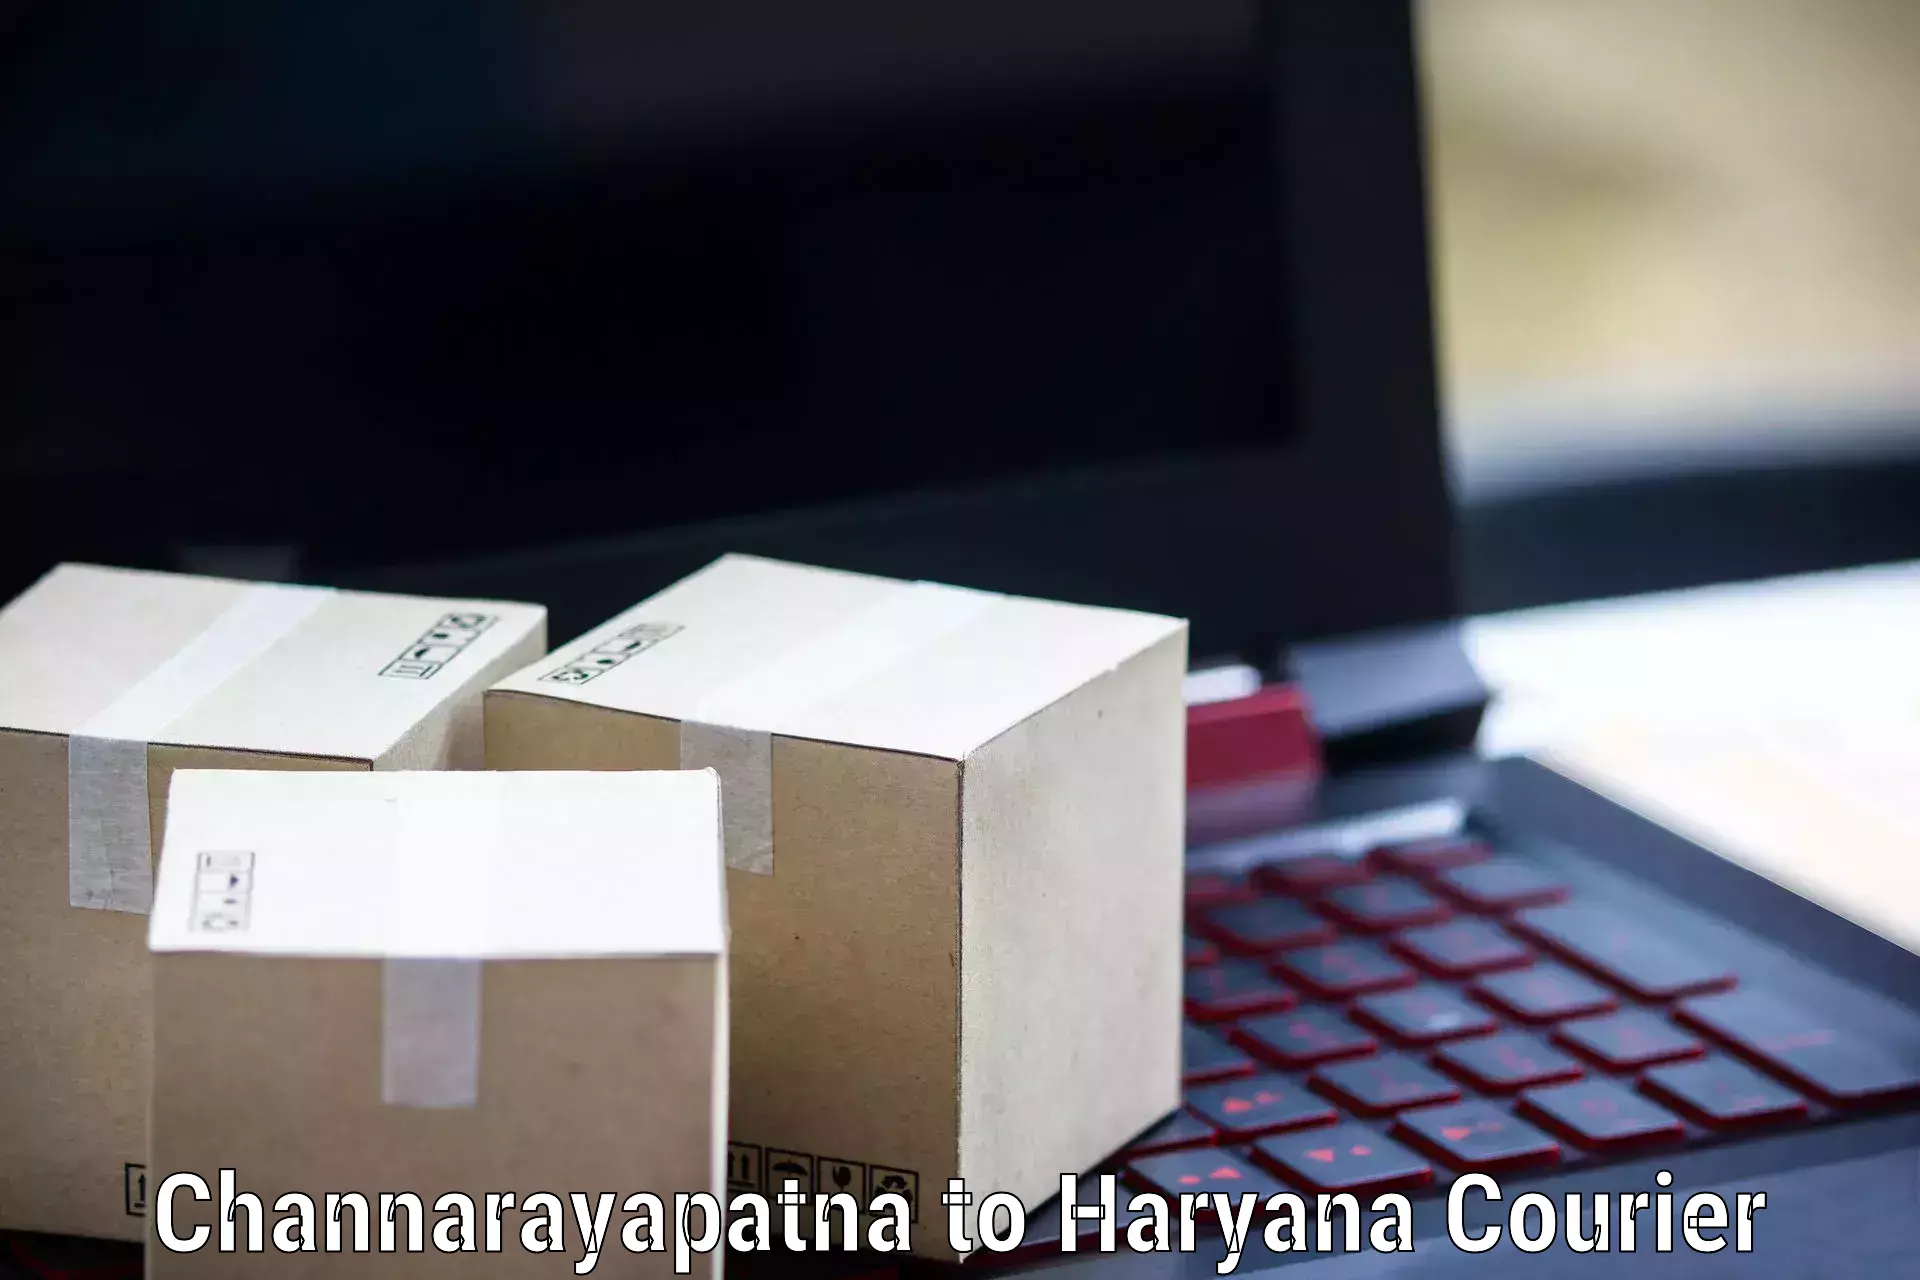 Holiday shipping services Channarayapatna to Kurukshetra University